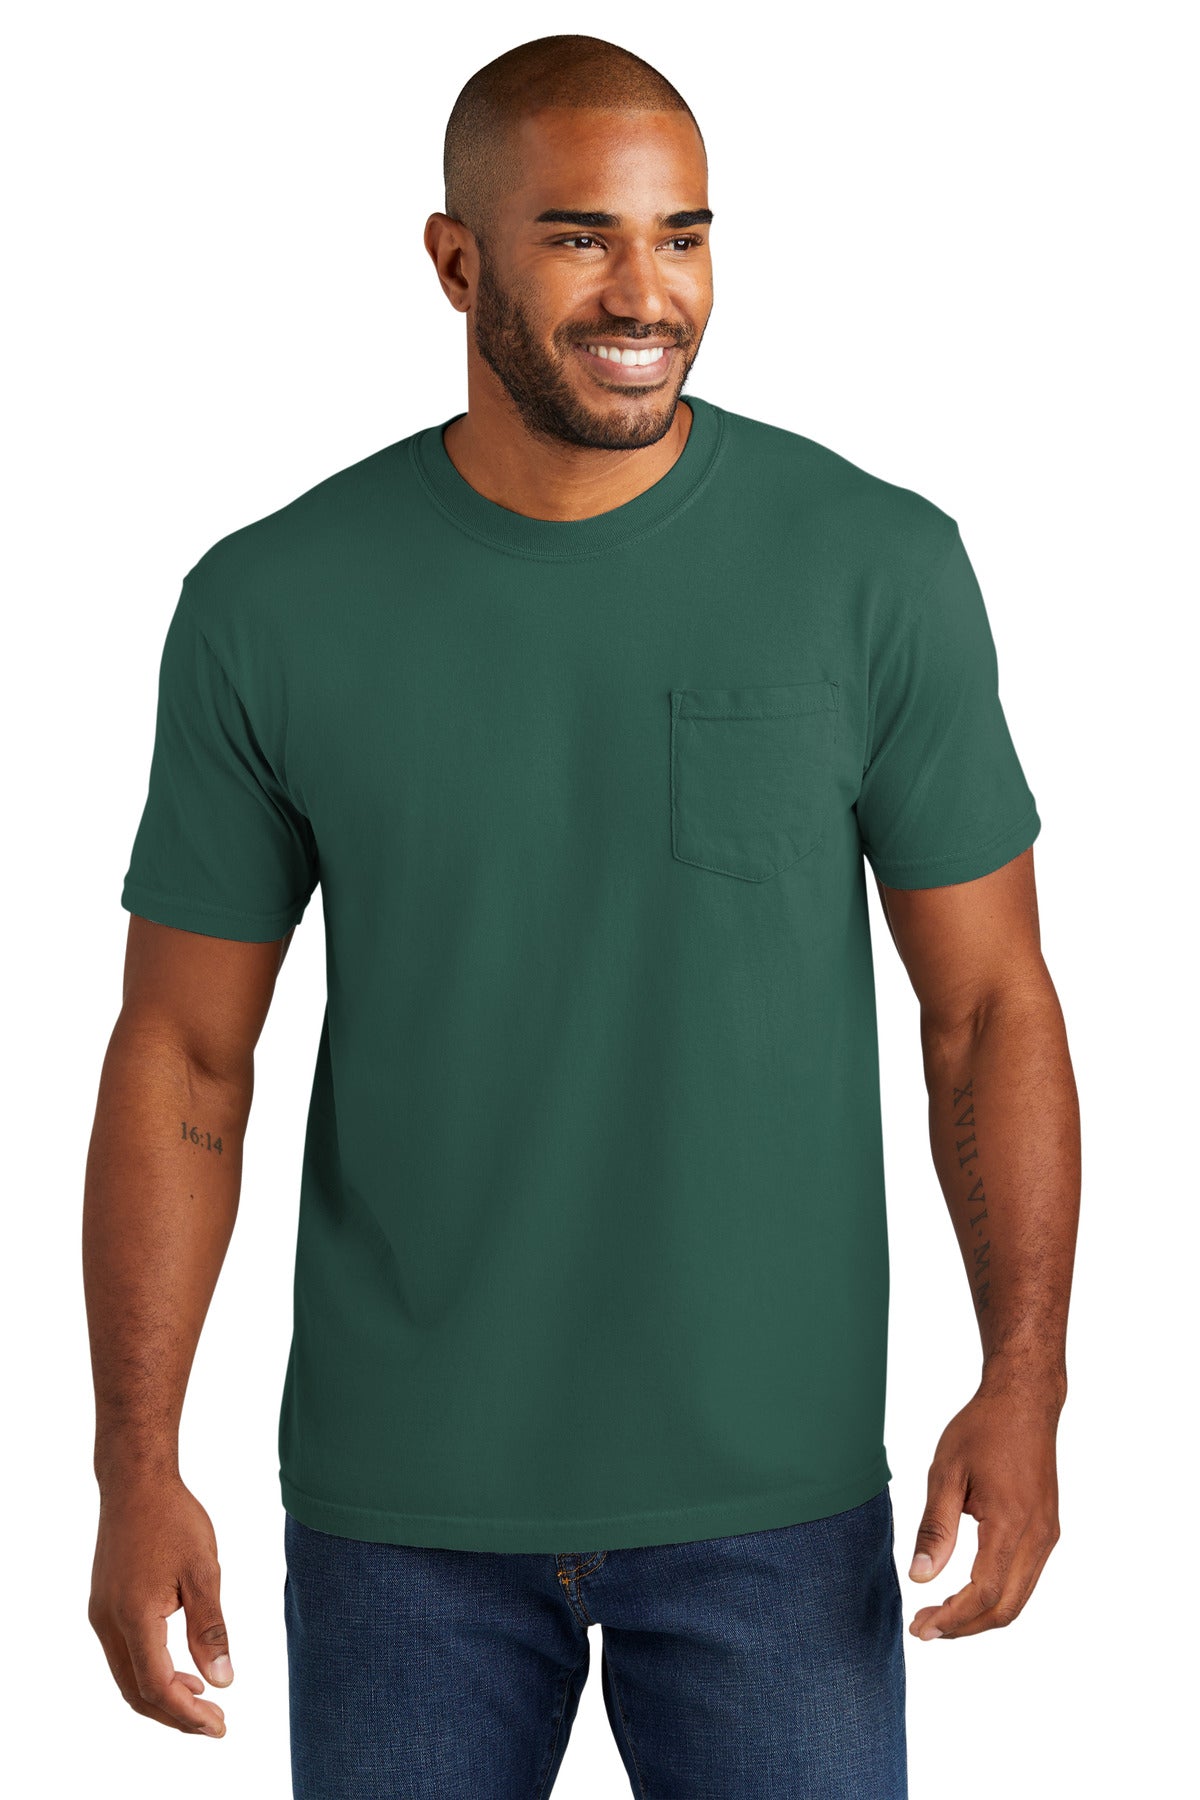 T-Shirts Emerald Comfort Colors